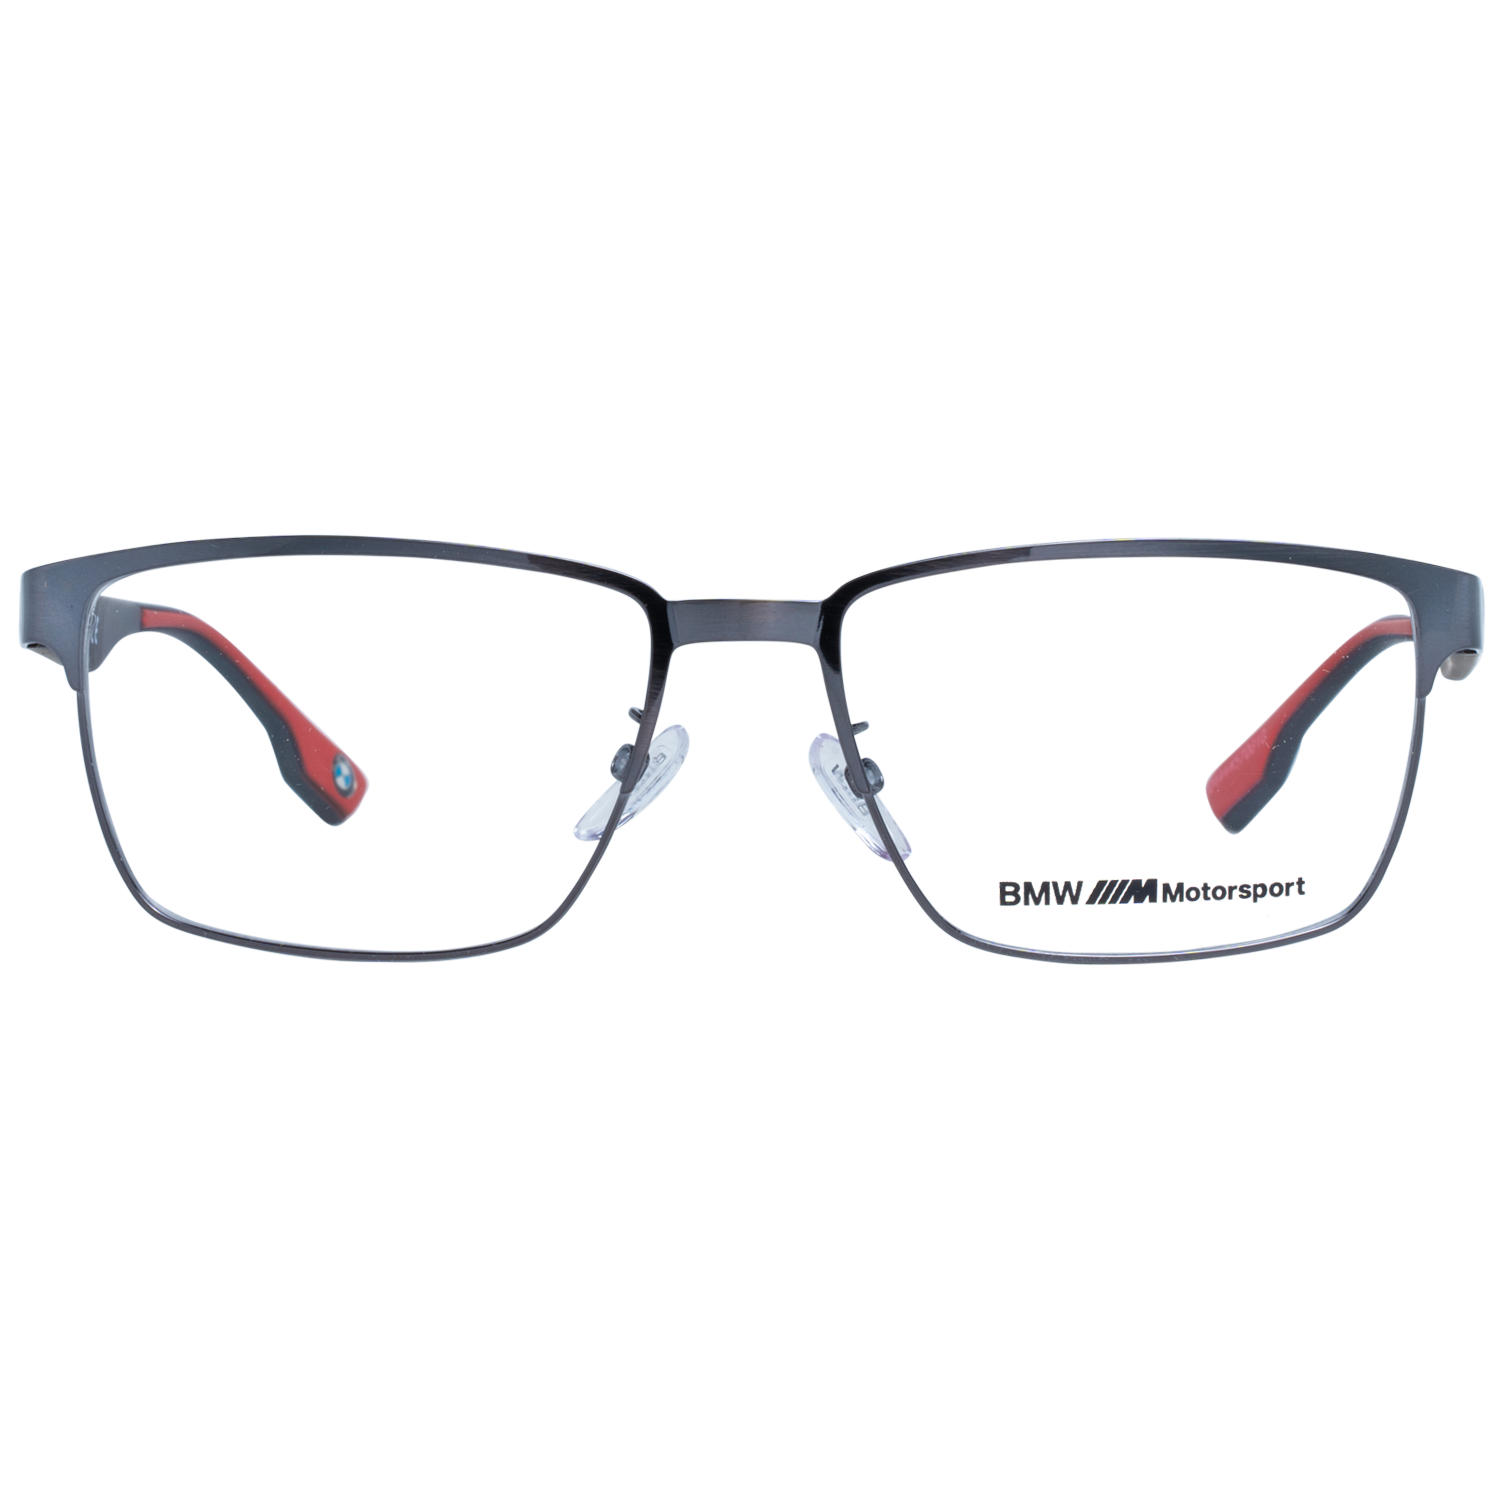 BMW Motorsport Frames BMW Motorsport Glasses Frames BS5005-H 008 56mm Eyeglasses Eyewear UK USA Australia 